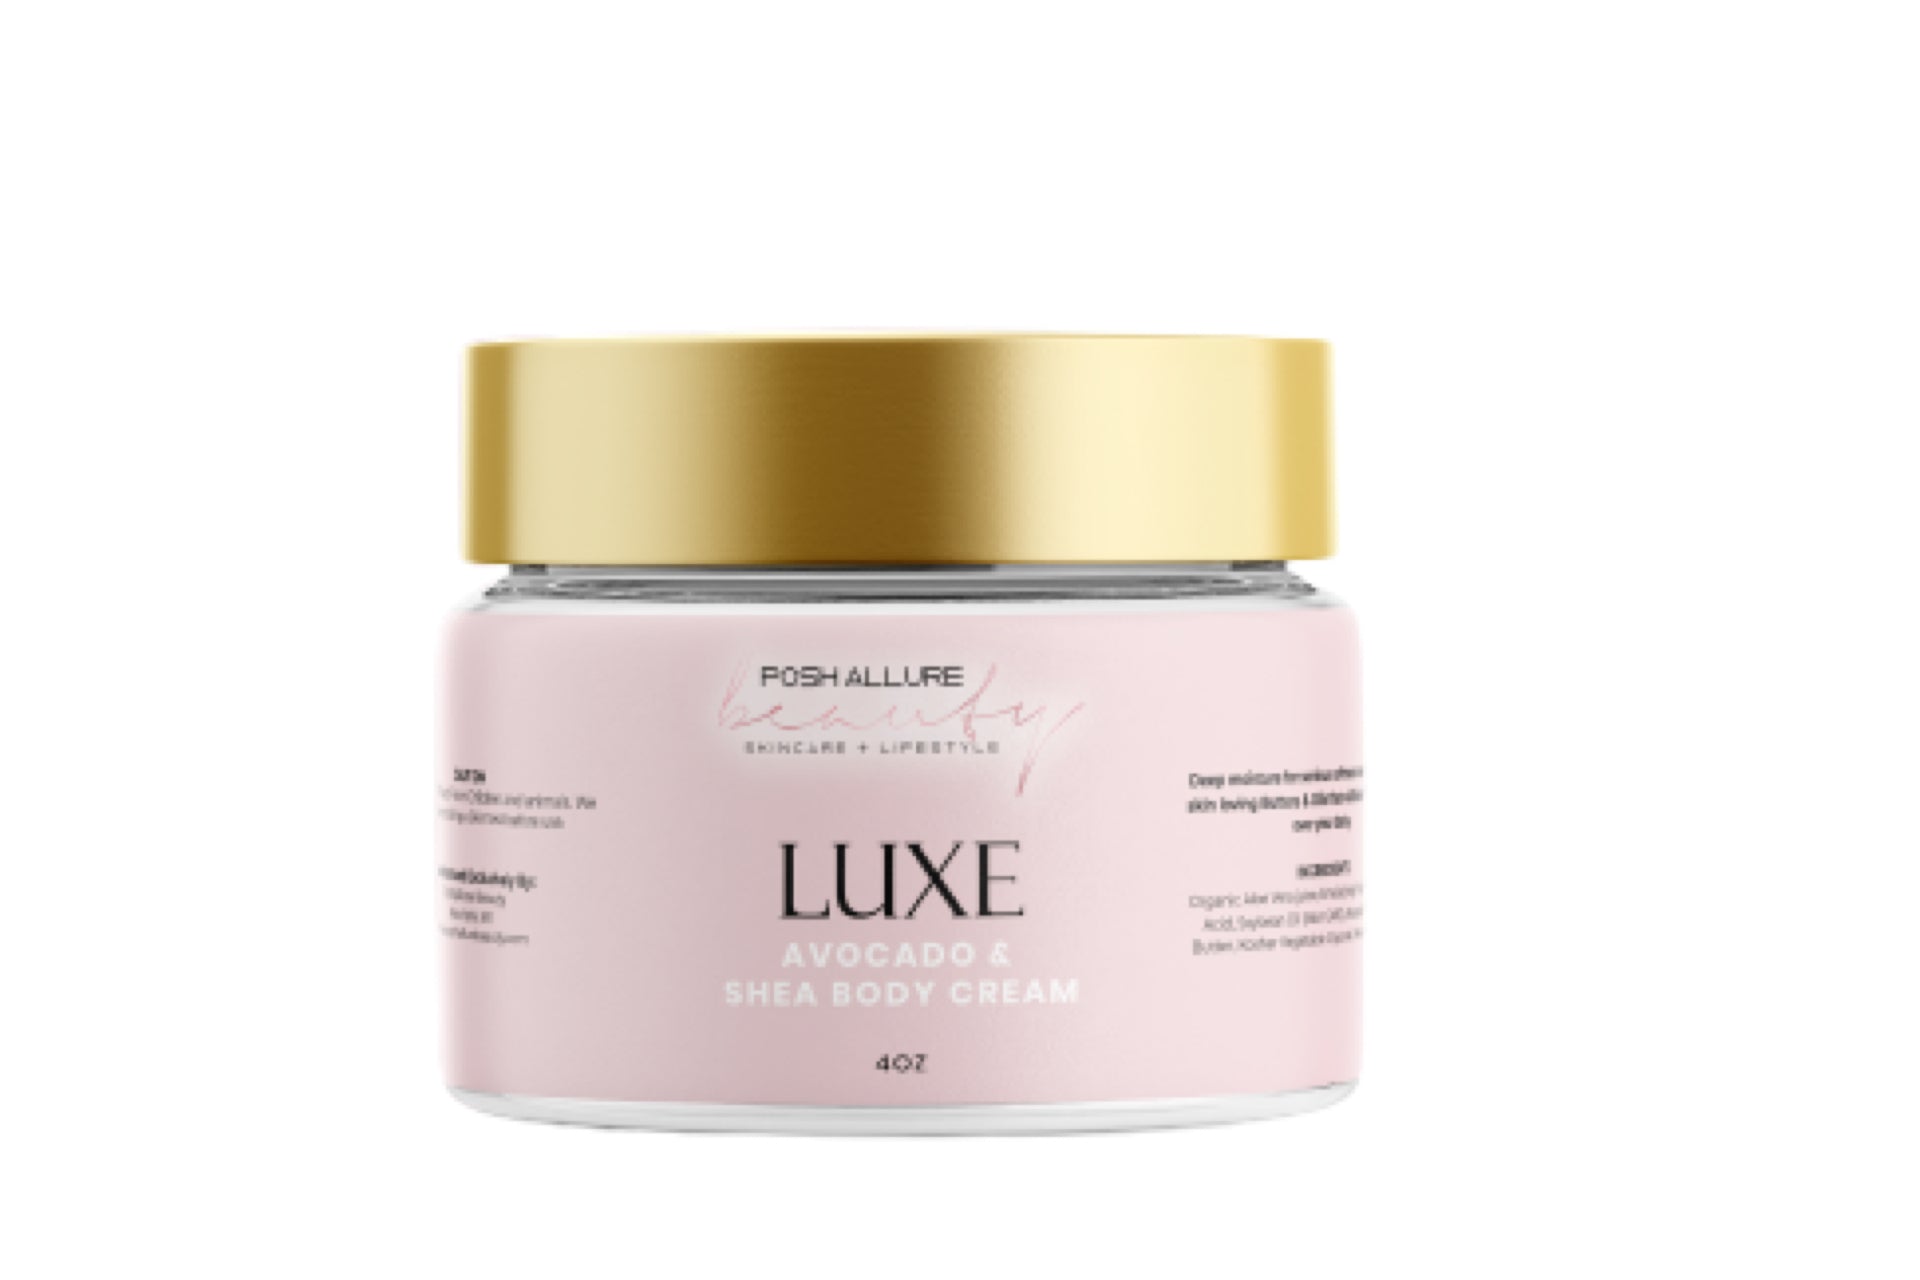 LUXE Body Cream - Posh|Allure Beauty